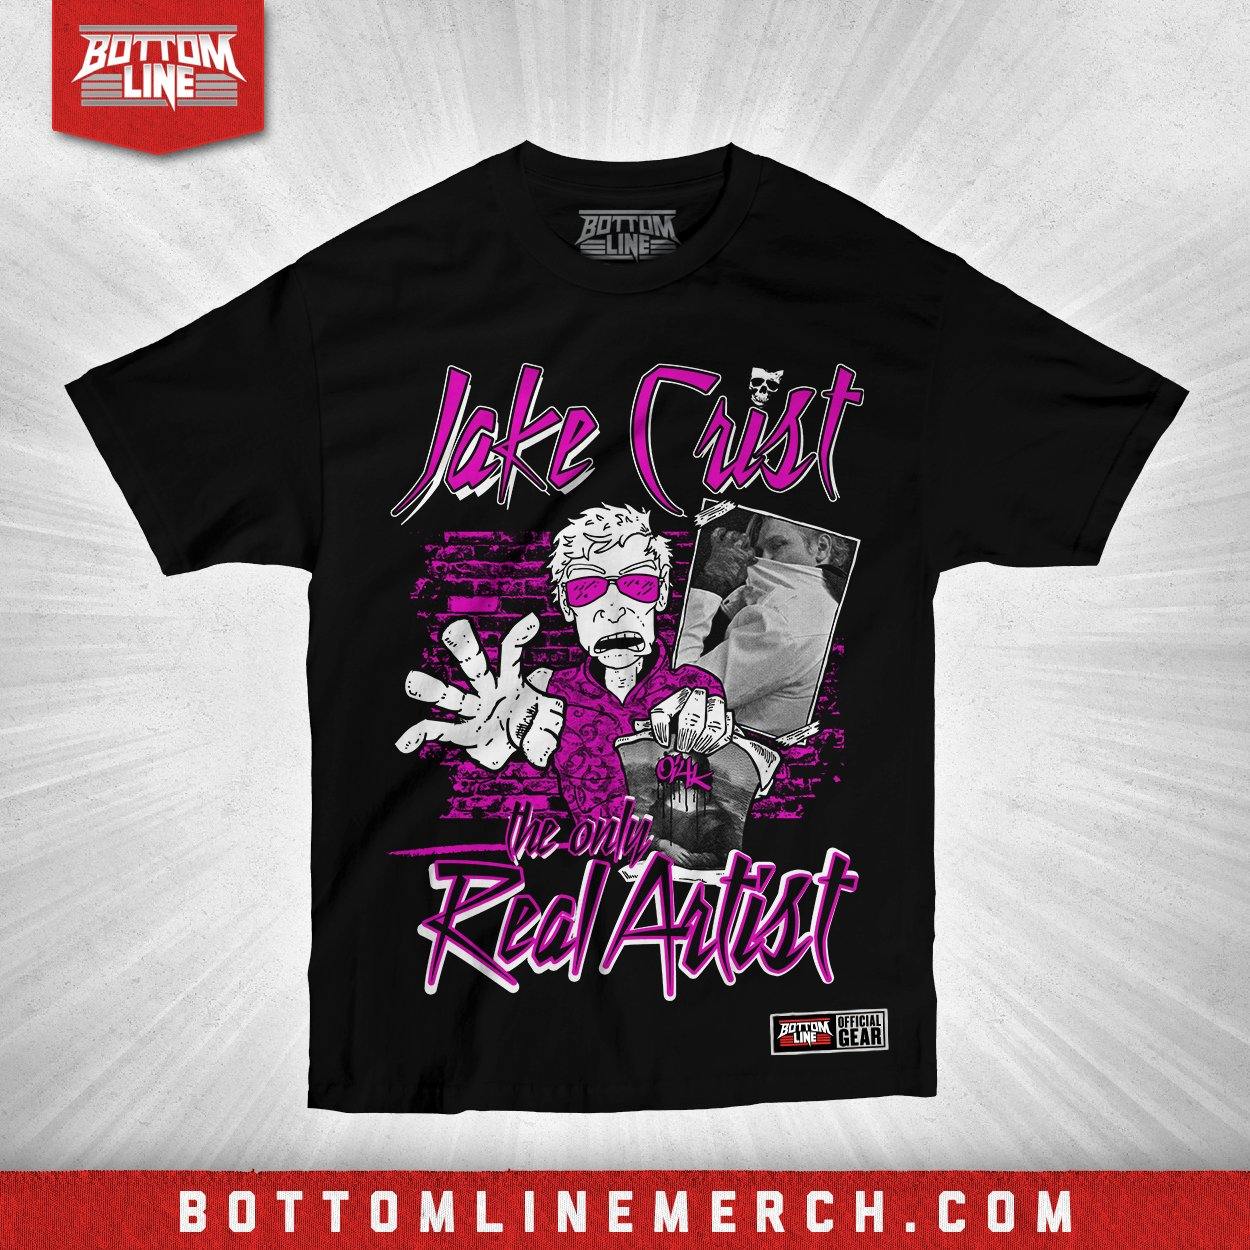 Buy Now – Jake Crist "Real Artist" Shirt – Wrestler & Wrestling Merch – Bottom Line